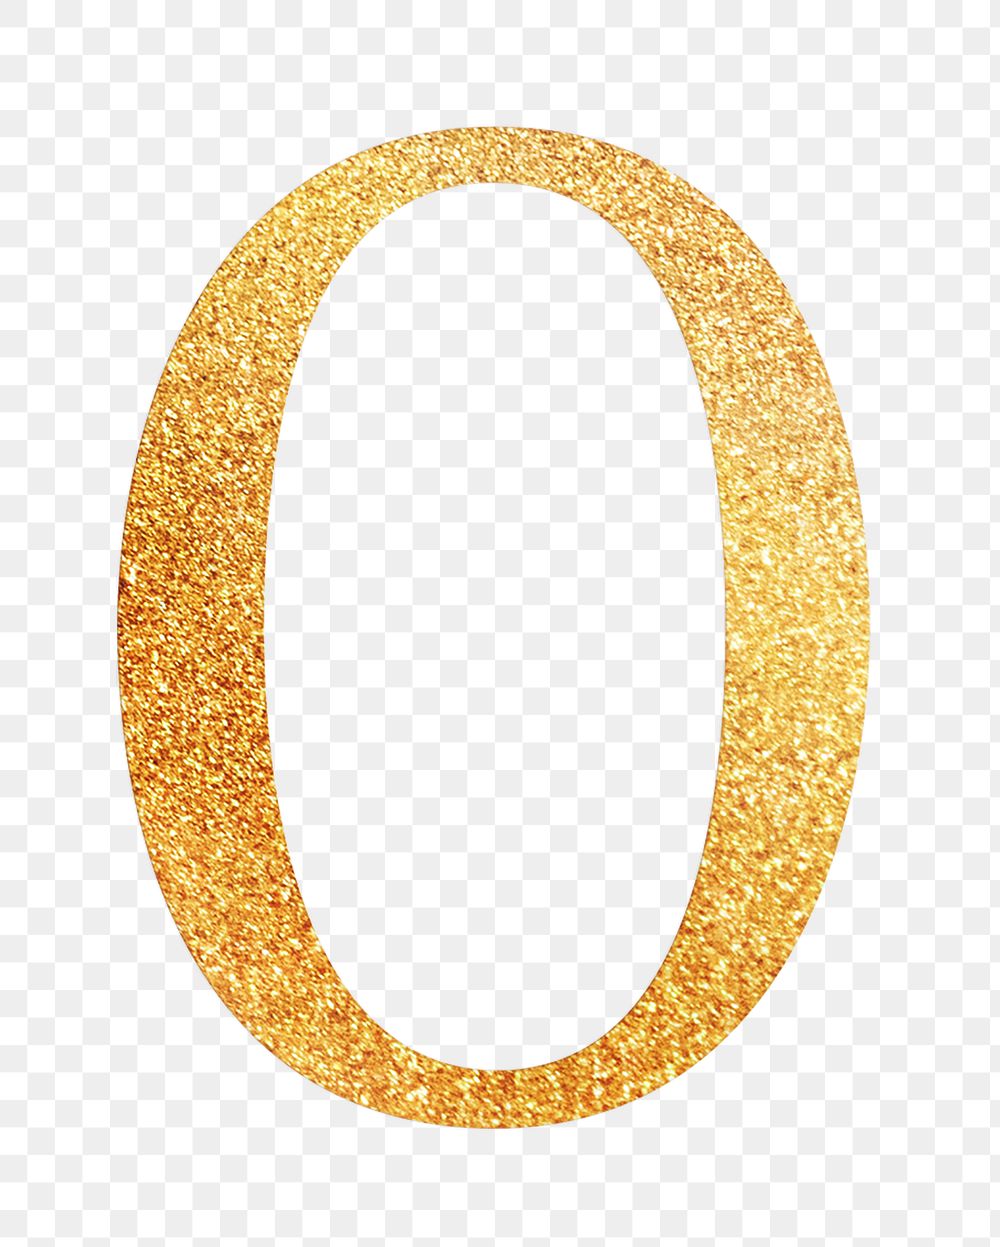 Number 0 png gold foil alphabet, transparent background